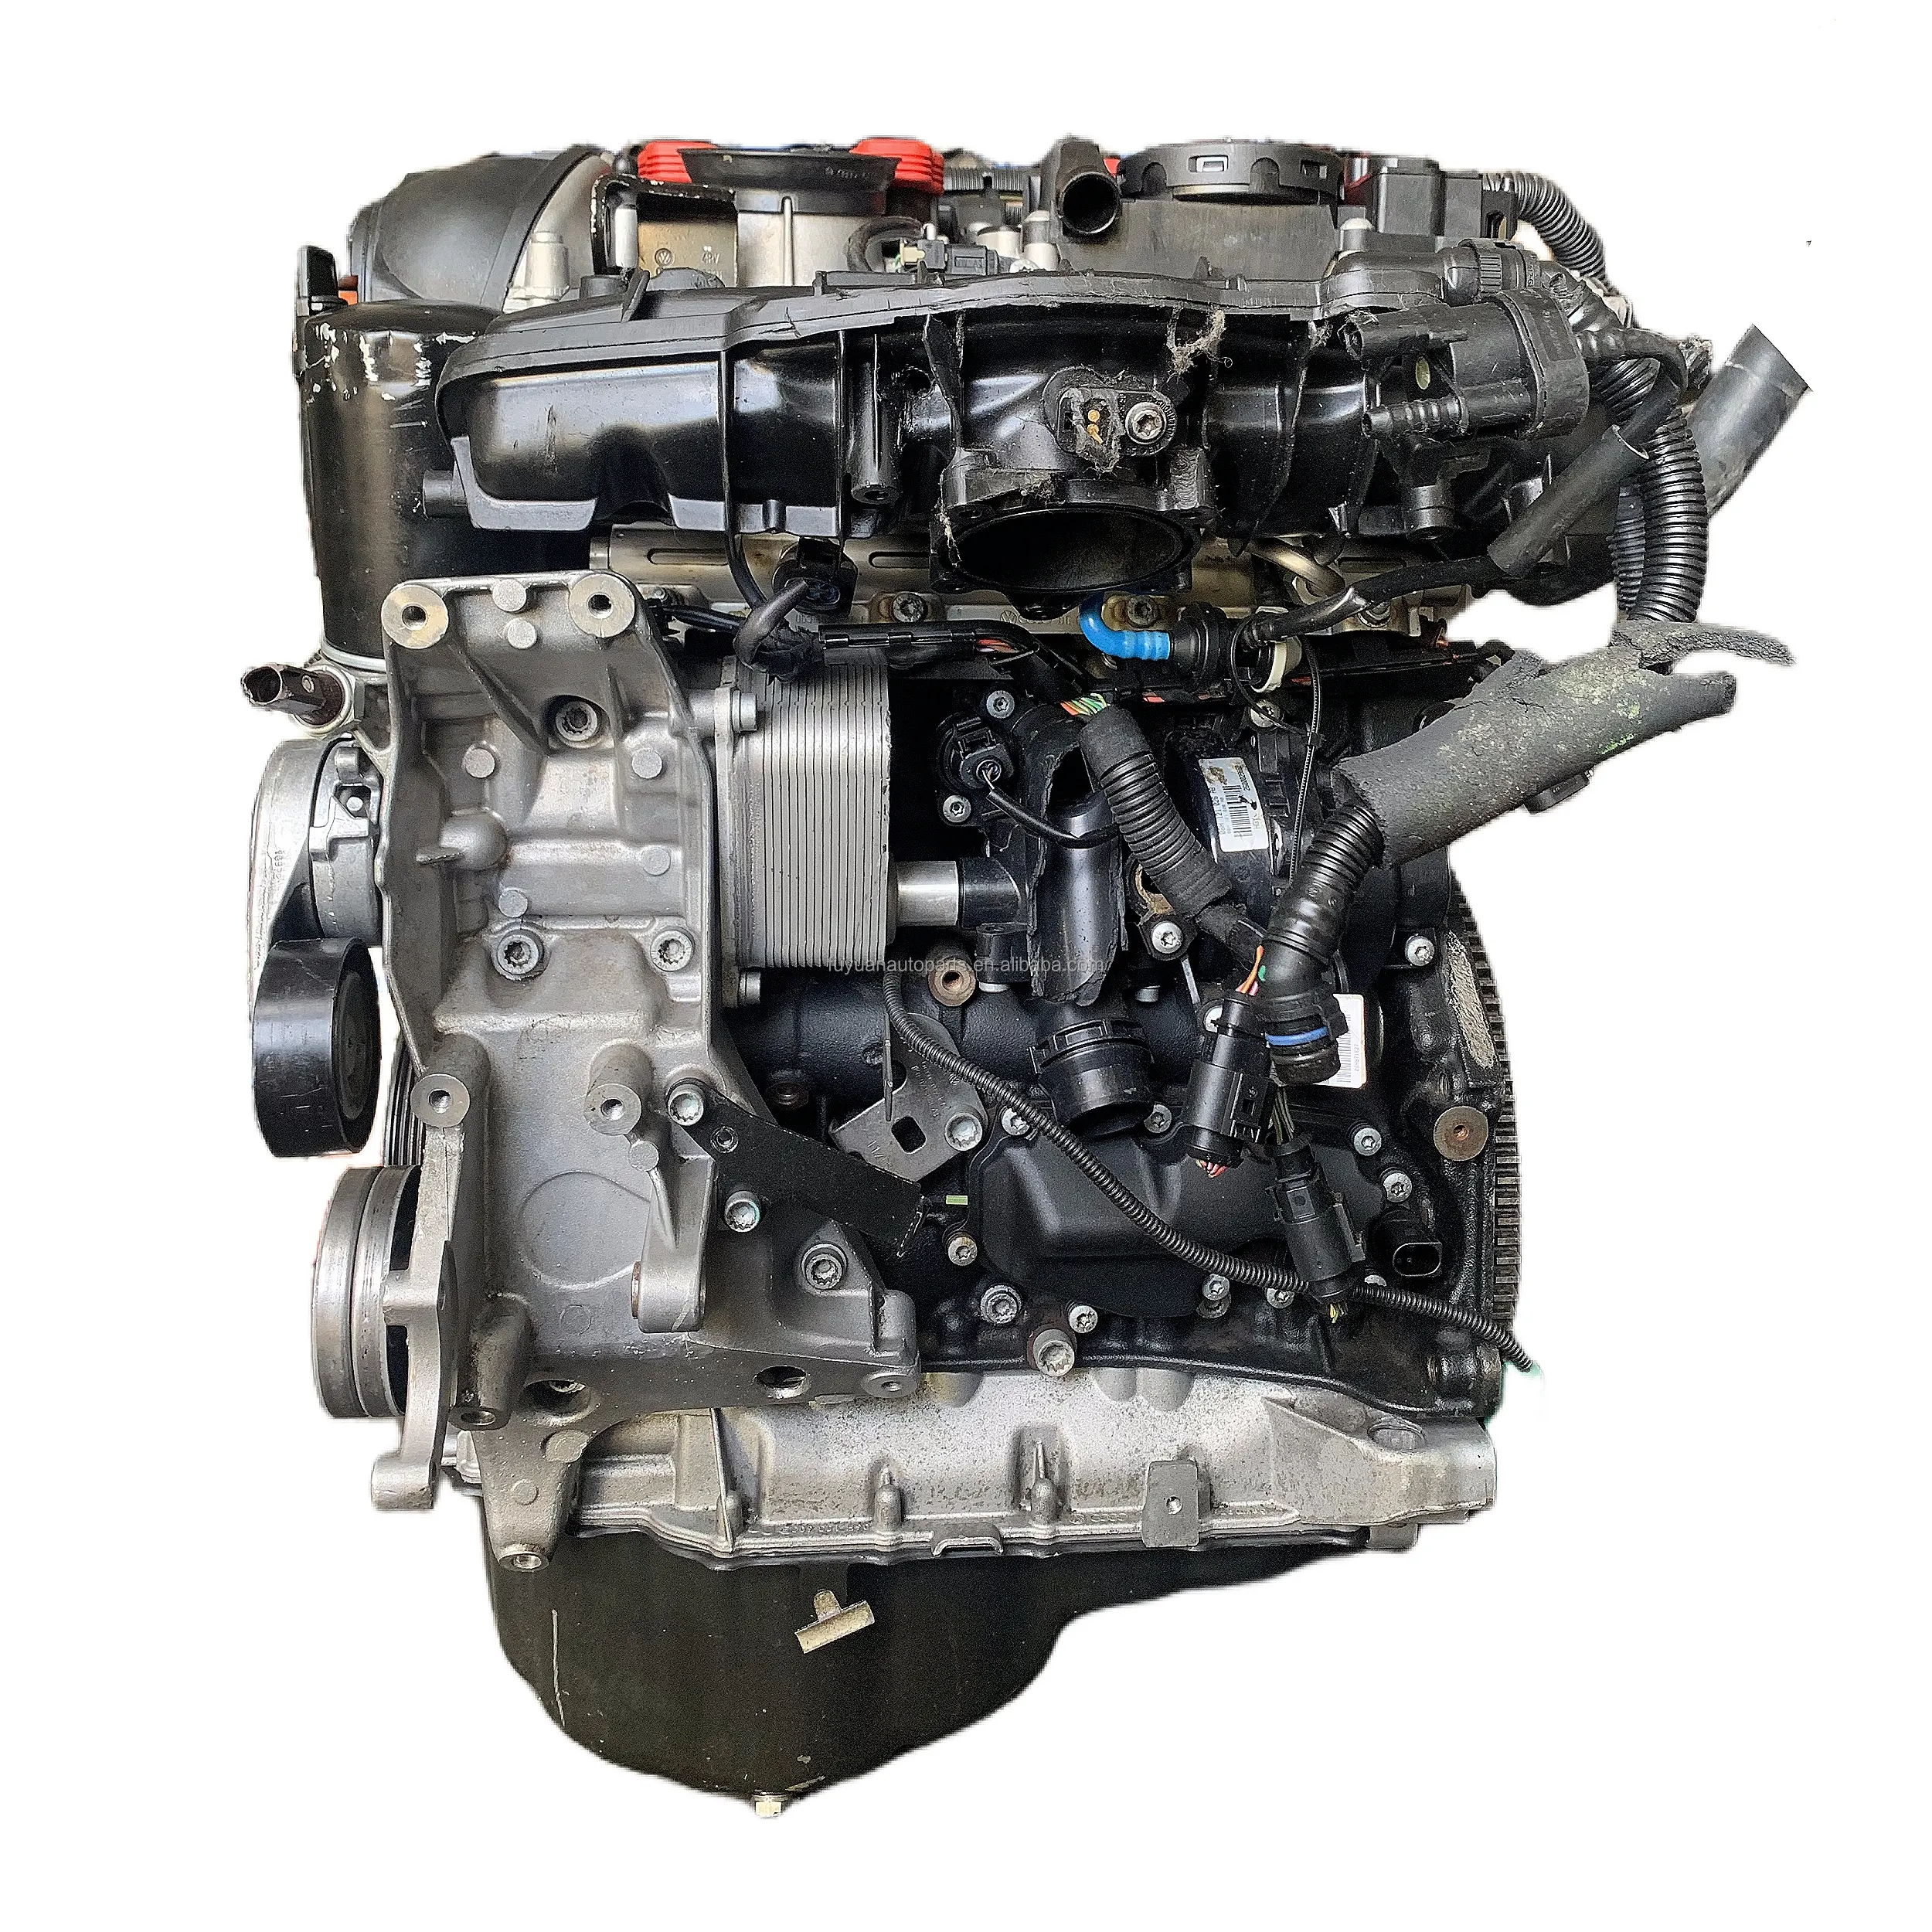 Orijinal sıcak satış audi a4 motorlar nesil 2 2.0L motor Audi için motor tertibatı uzun blok